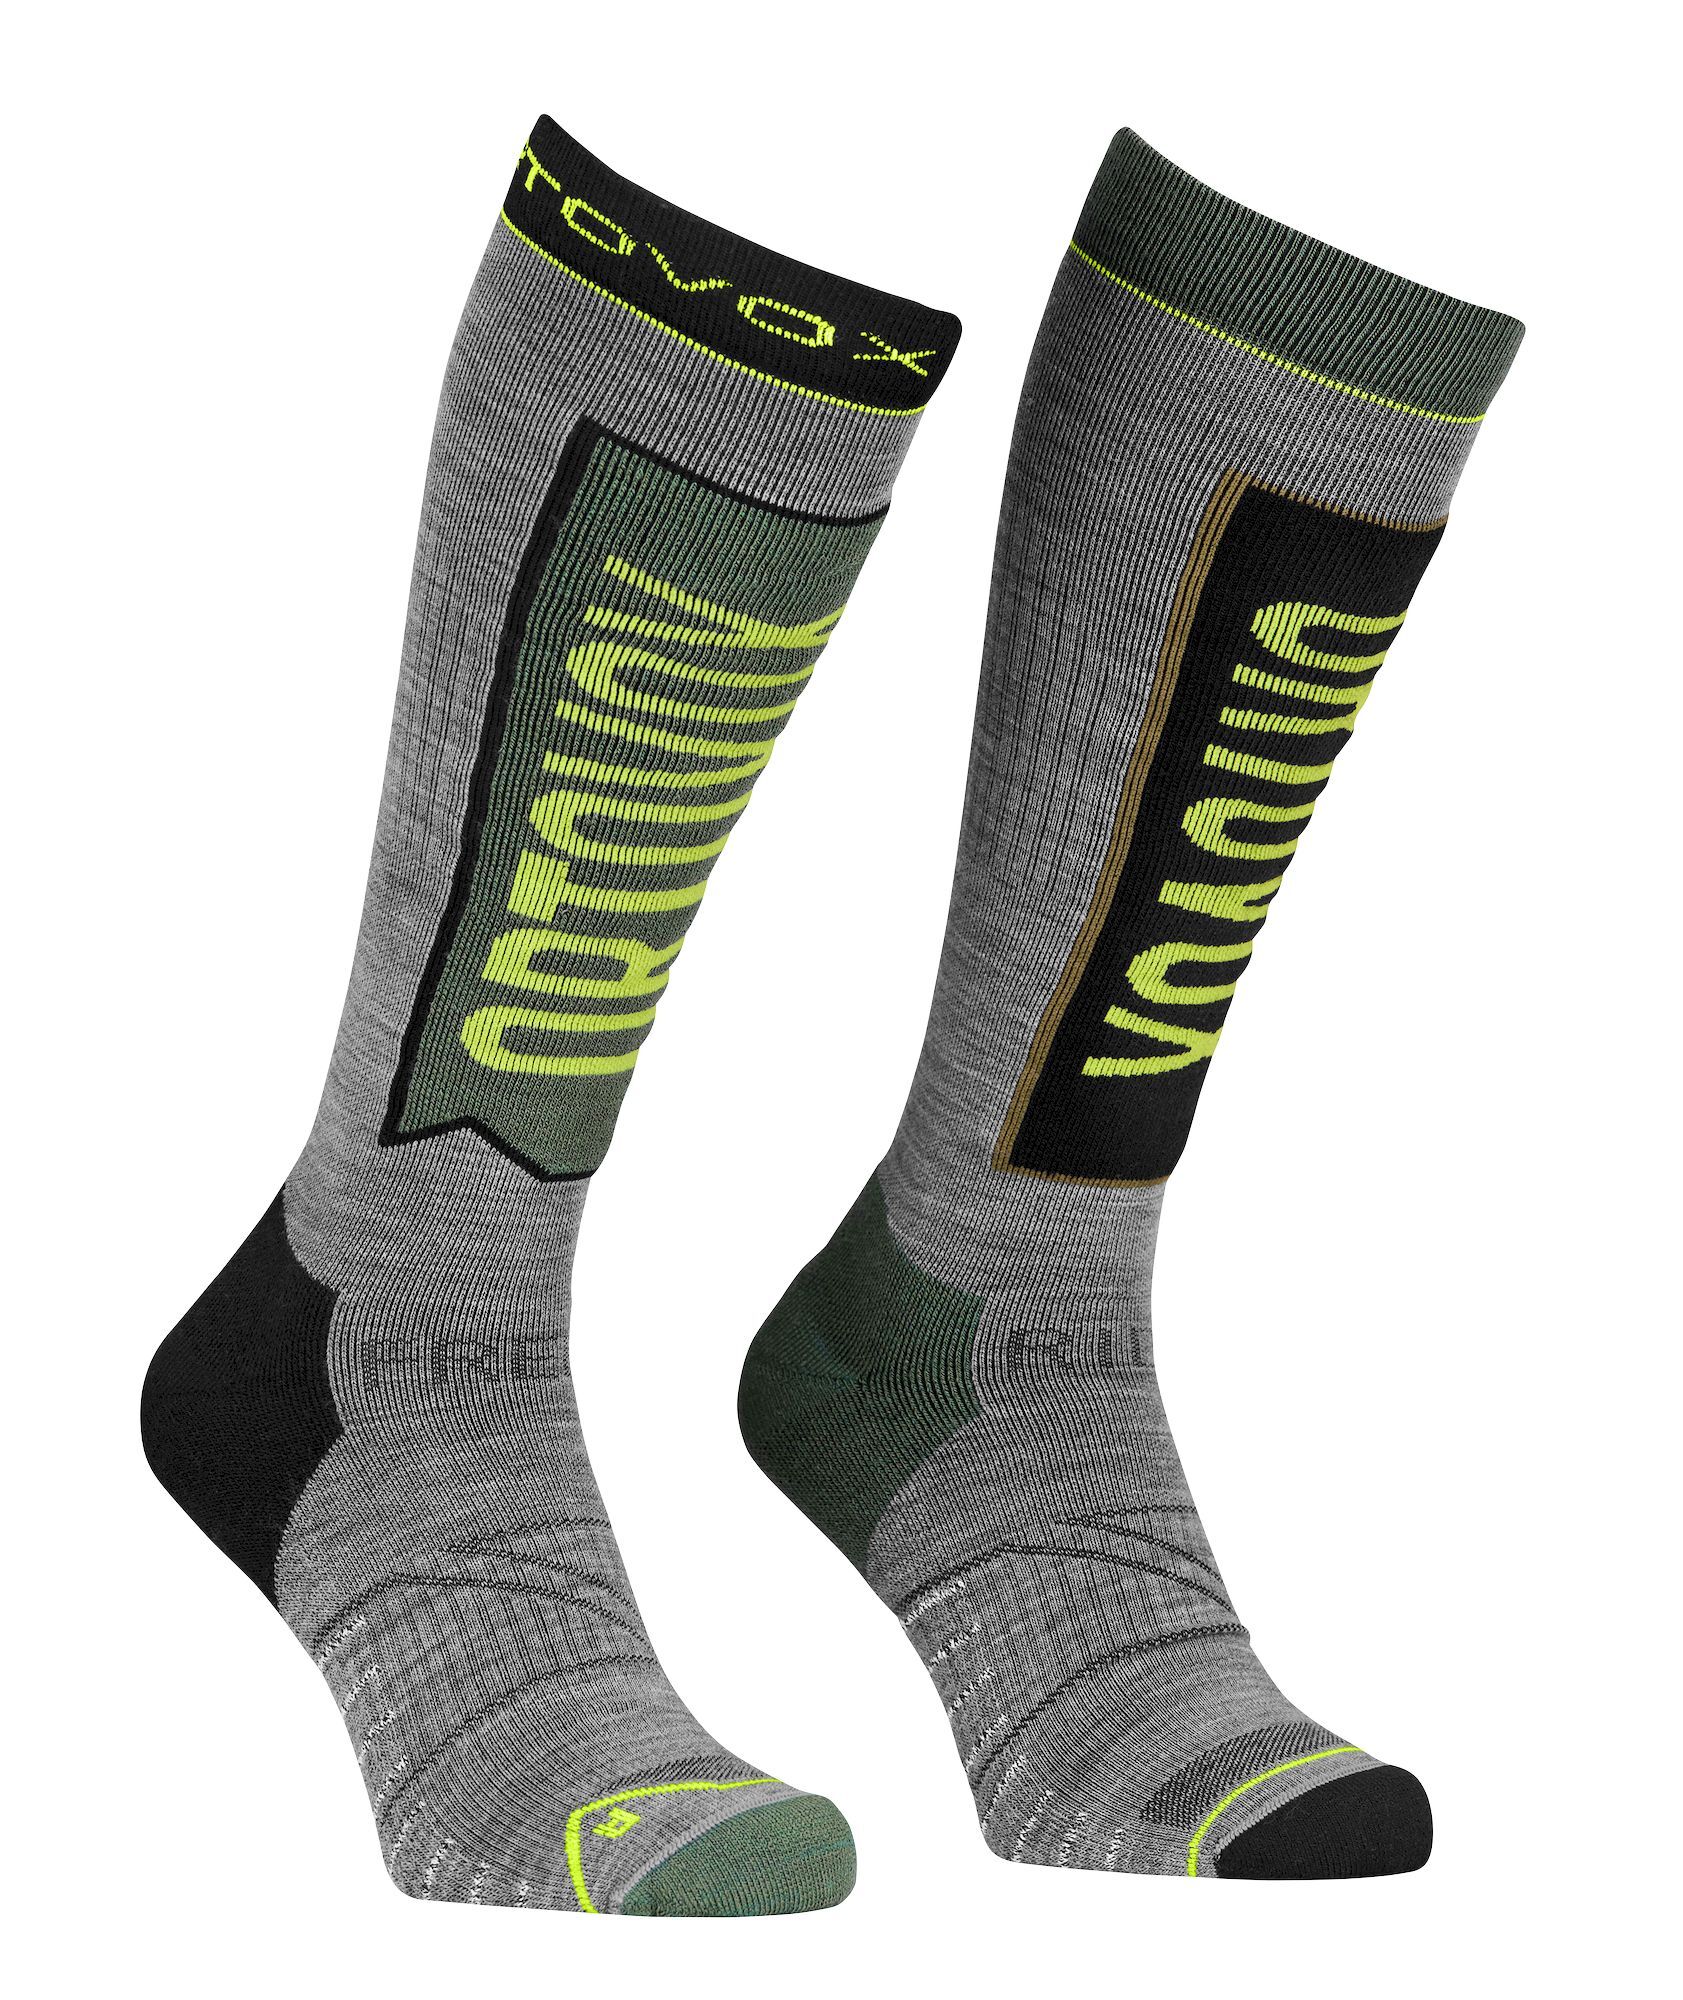 Ortovox Free Ride Long Socks - Ski socks - Men's